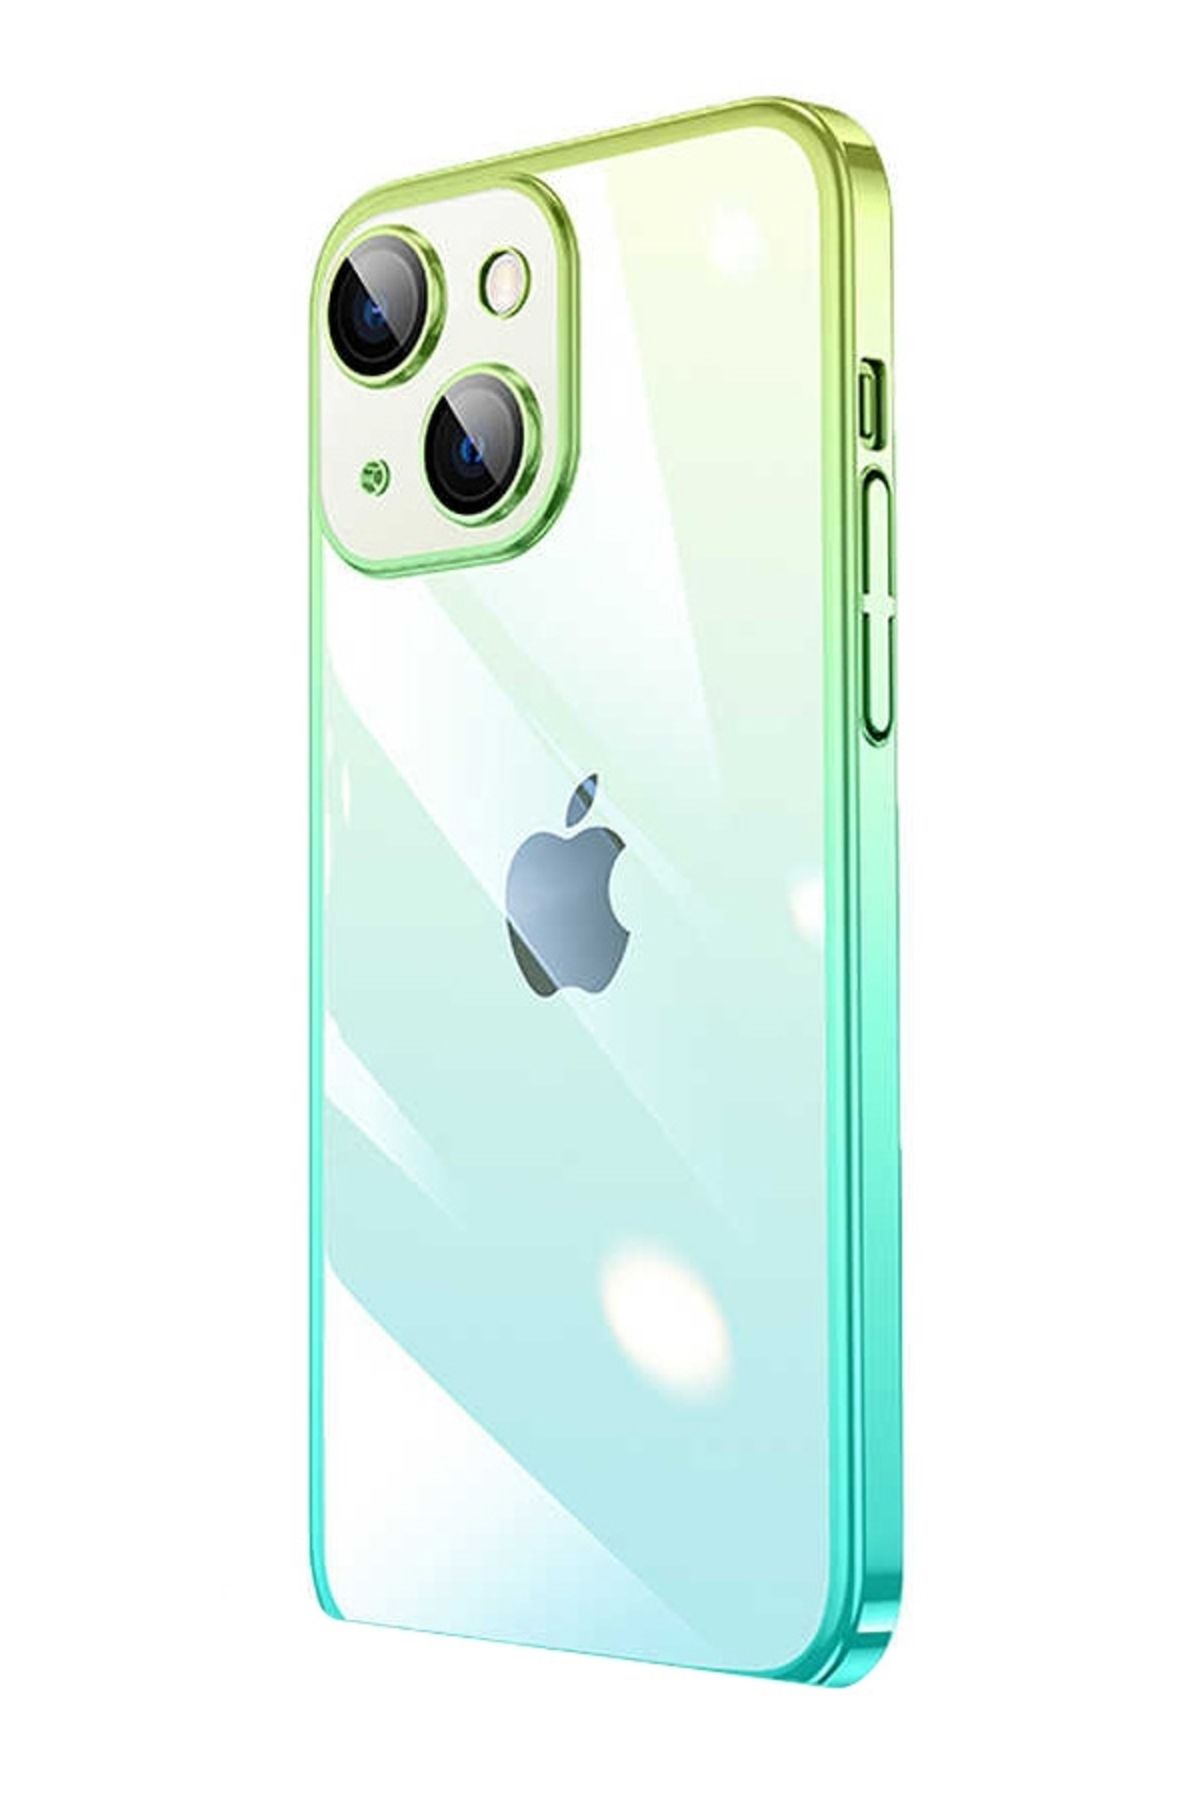 Mobilcadde iPhone 12 Geçişli Kamera Korumalı Mavi-Yeşil Silikon Kılıf